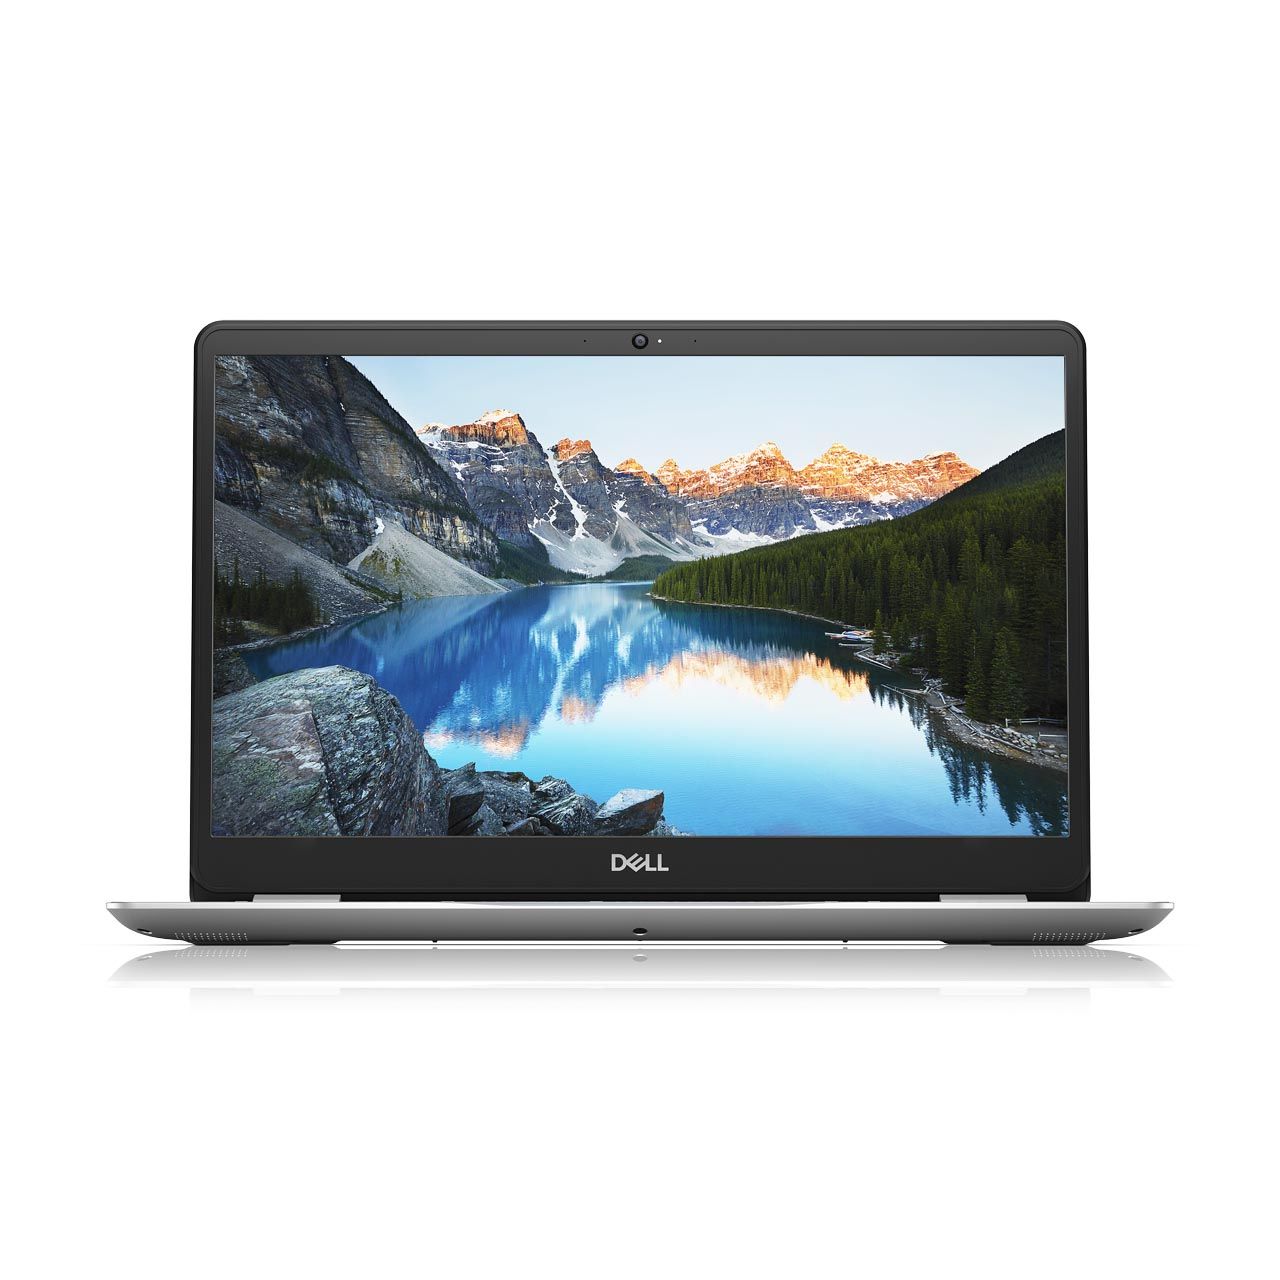 DELL Inspiron 15-inch Laptop with DELL Cinema i7-8565U 1.8Ghz/16GB/1TB+256GB/NVIDIA MX 130 4GB G/15.6-inch FHD/Windows 10/Silver